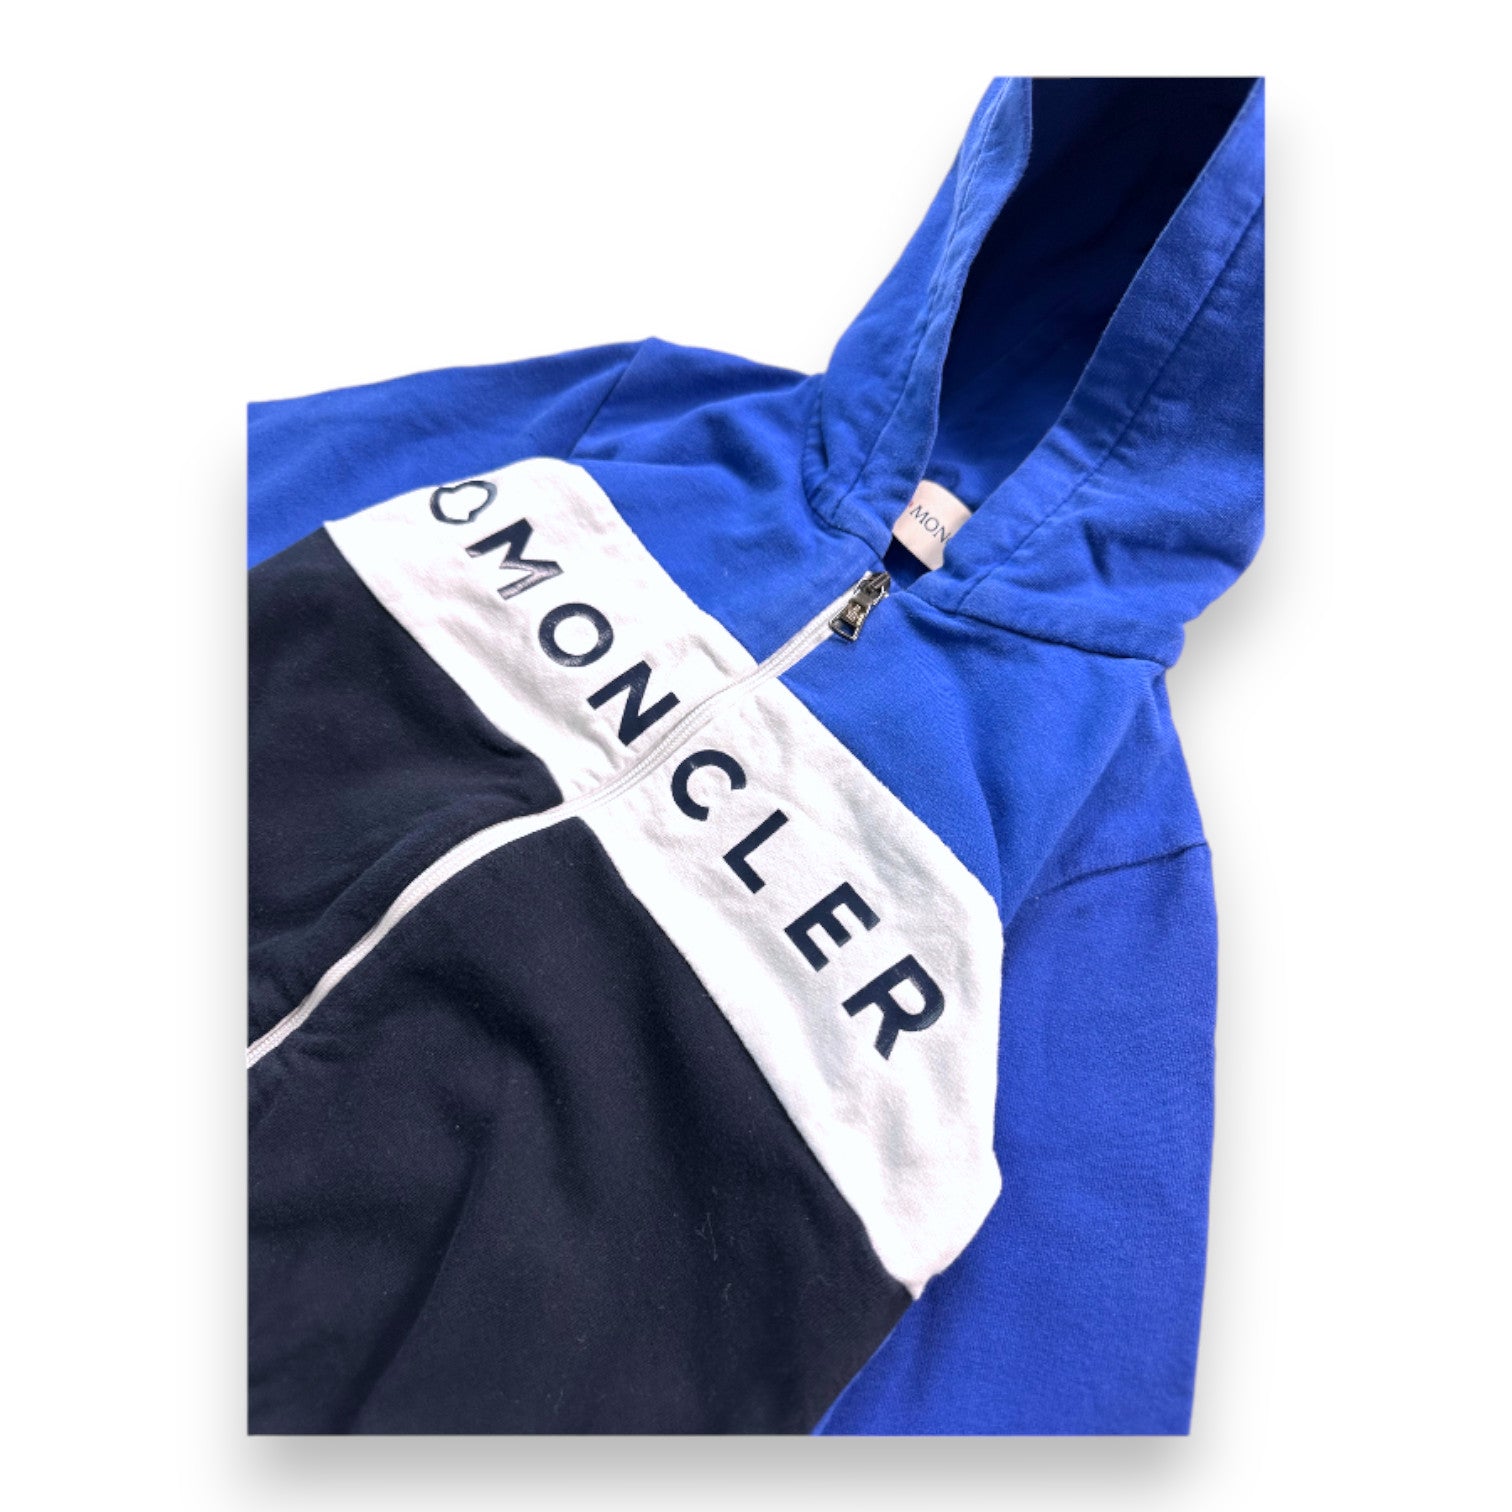 MONCLER - Sweat zippé bleu blanc et noir "Moncler" - 18 mois